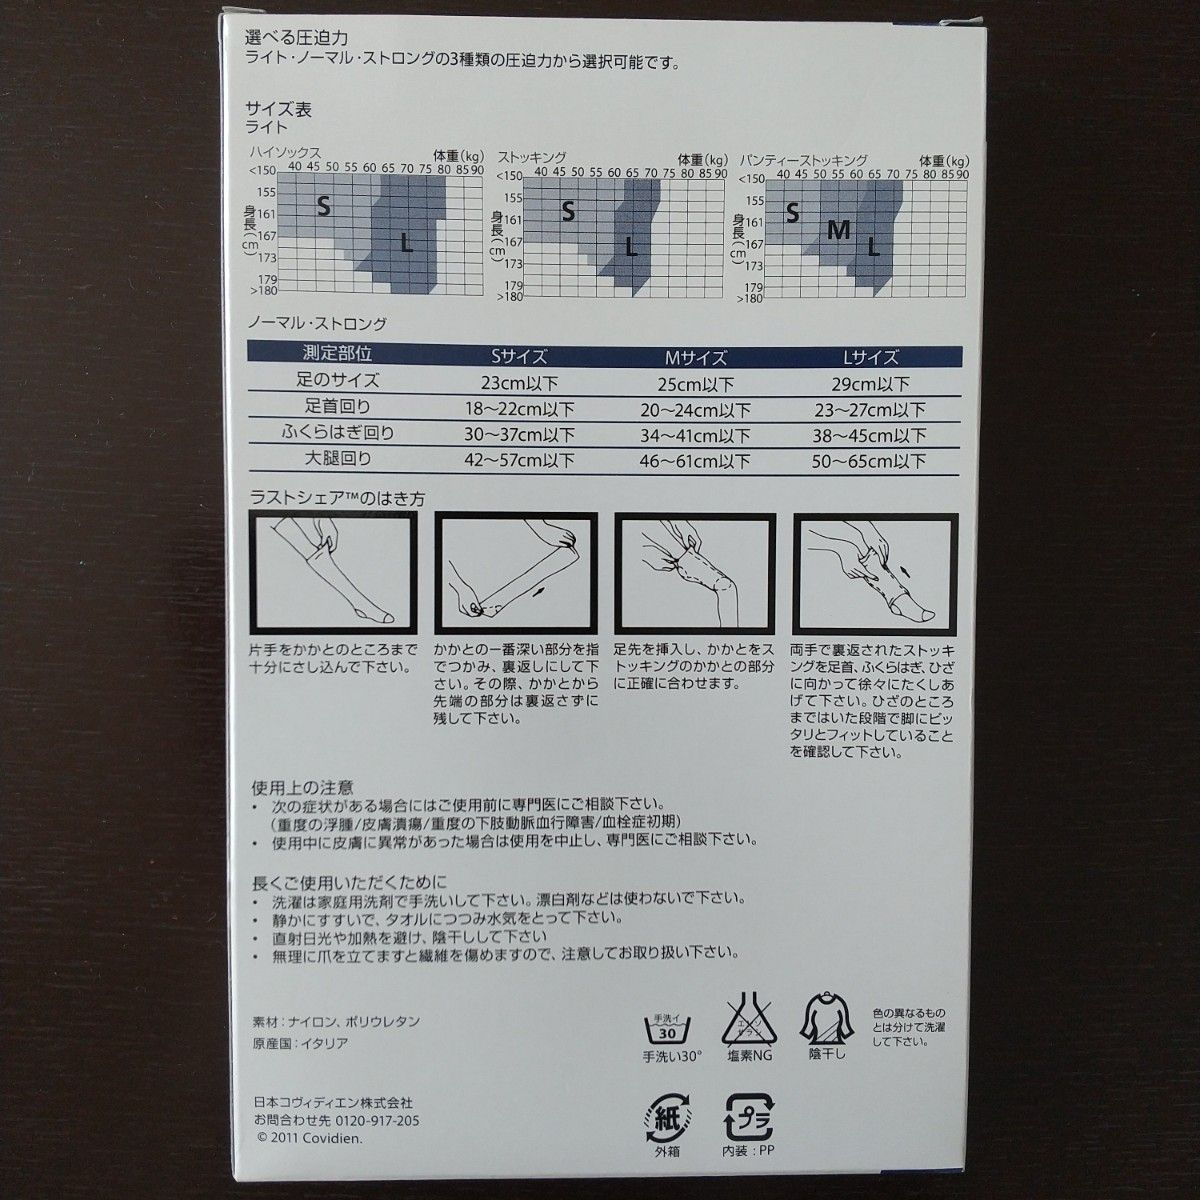 日本コヴィディエン  ラストシェア 弾性ストッキング  ノーマル M  ベージュ C1432  新品未使用品  イタリア製  